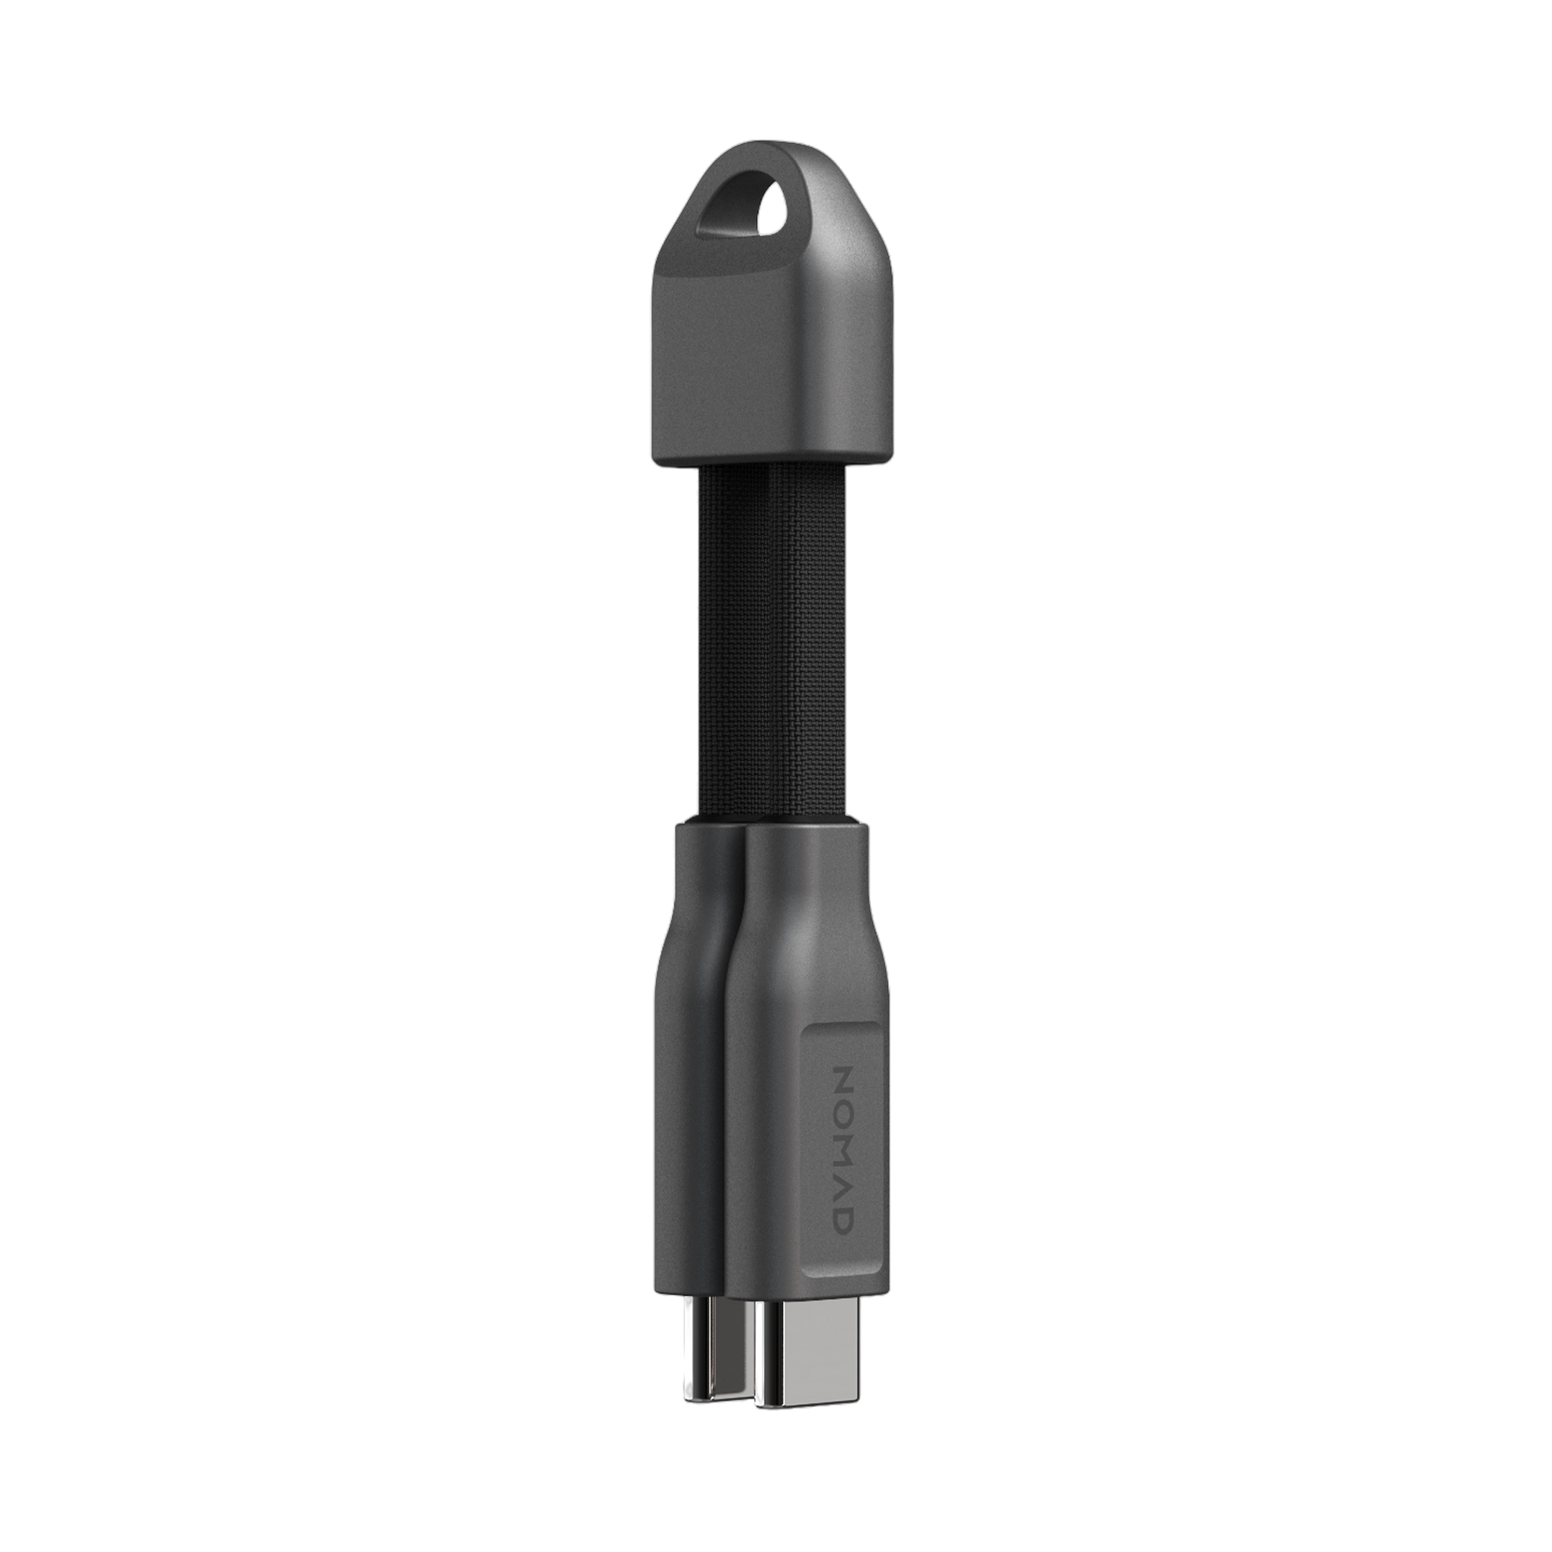 Nomad USB-C ChargeKey